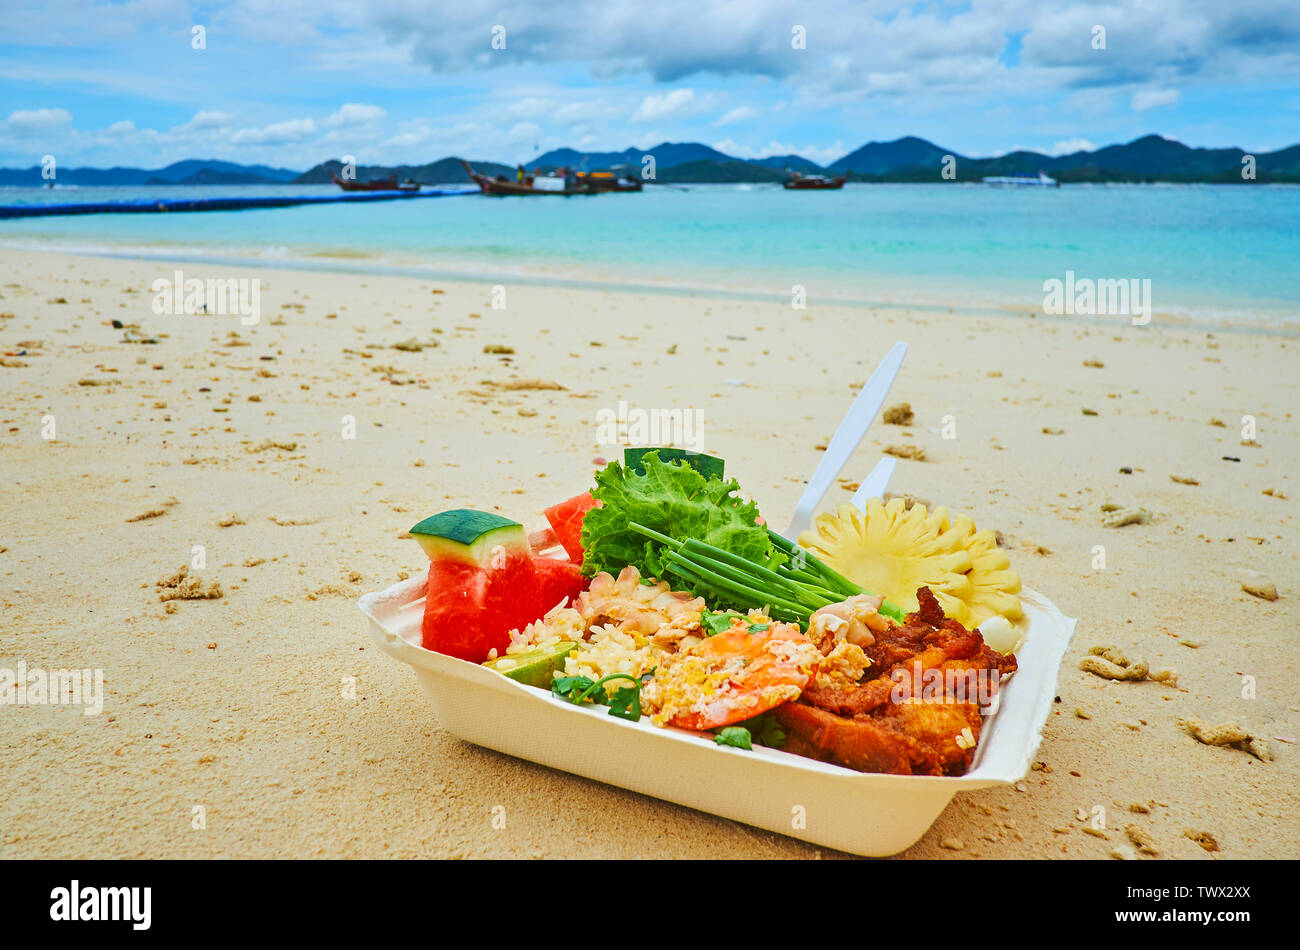 La boîte à lunch avec le plat traditionnel thaïlandais - fruits de mer grillés, le riz, les fruits et légumes frais, sur la plage de Khai Nai, Phuket, Thailand Banque D'Images